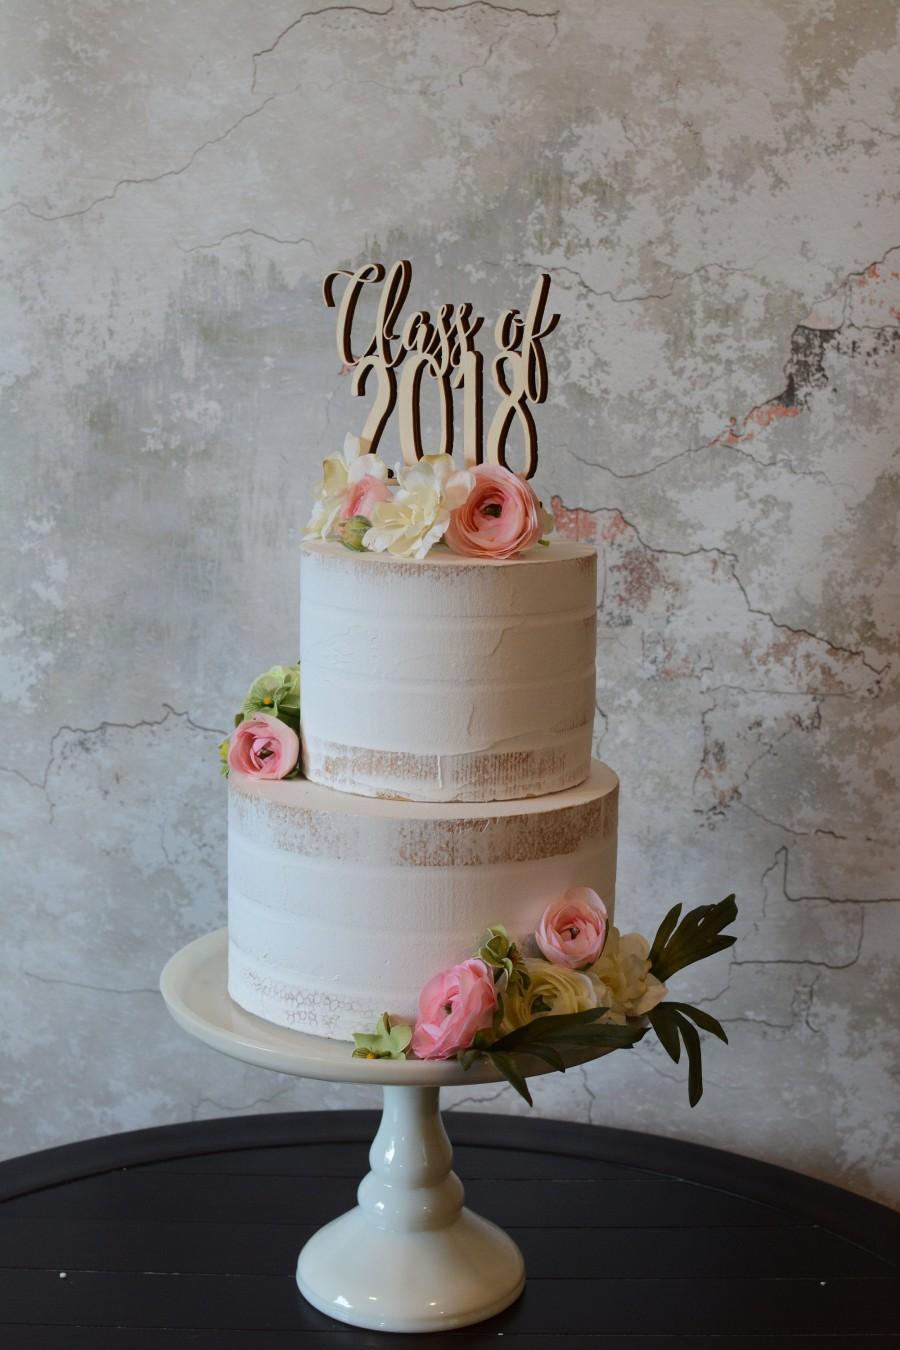 زفاف - Class Of 2019 - Cake Topper - Graduation Cake Topper - Senior - Party Decor - Unpainted - Rustic - Graduate - 2019 - Gift